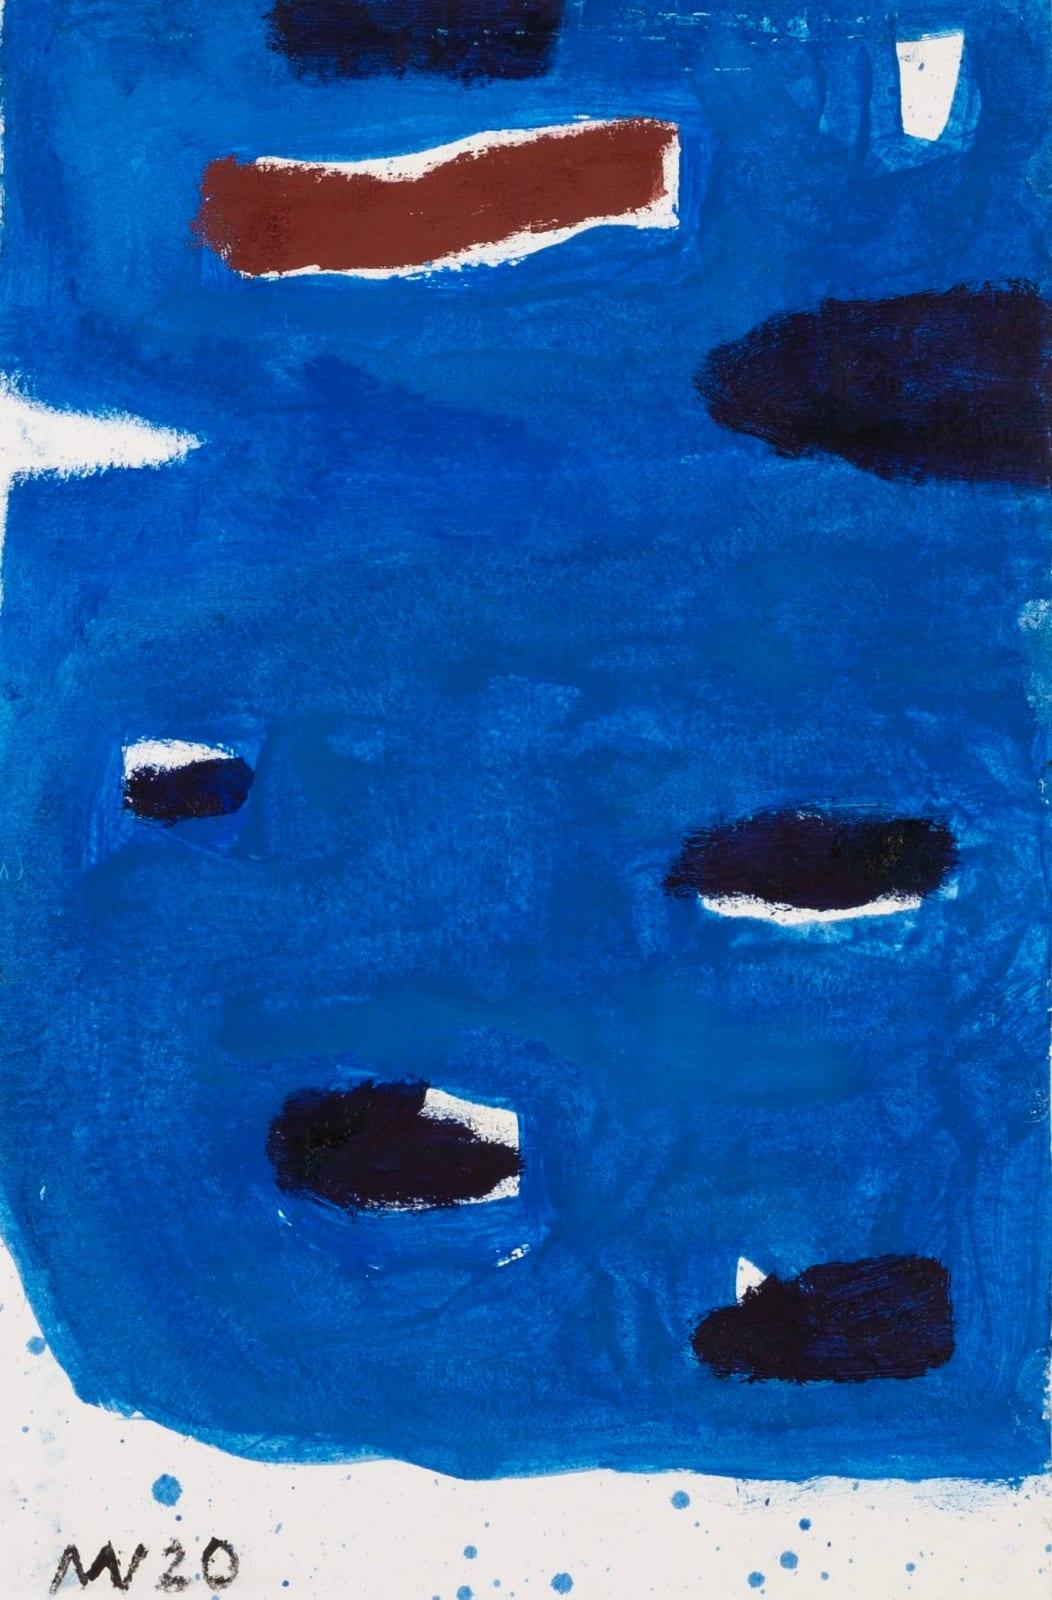 Dark Deep Painting by Michael Vaughan, 2020